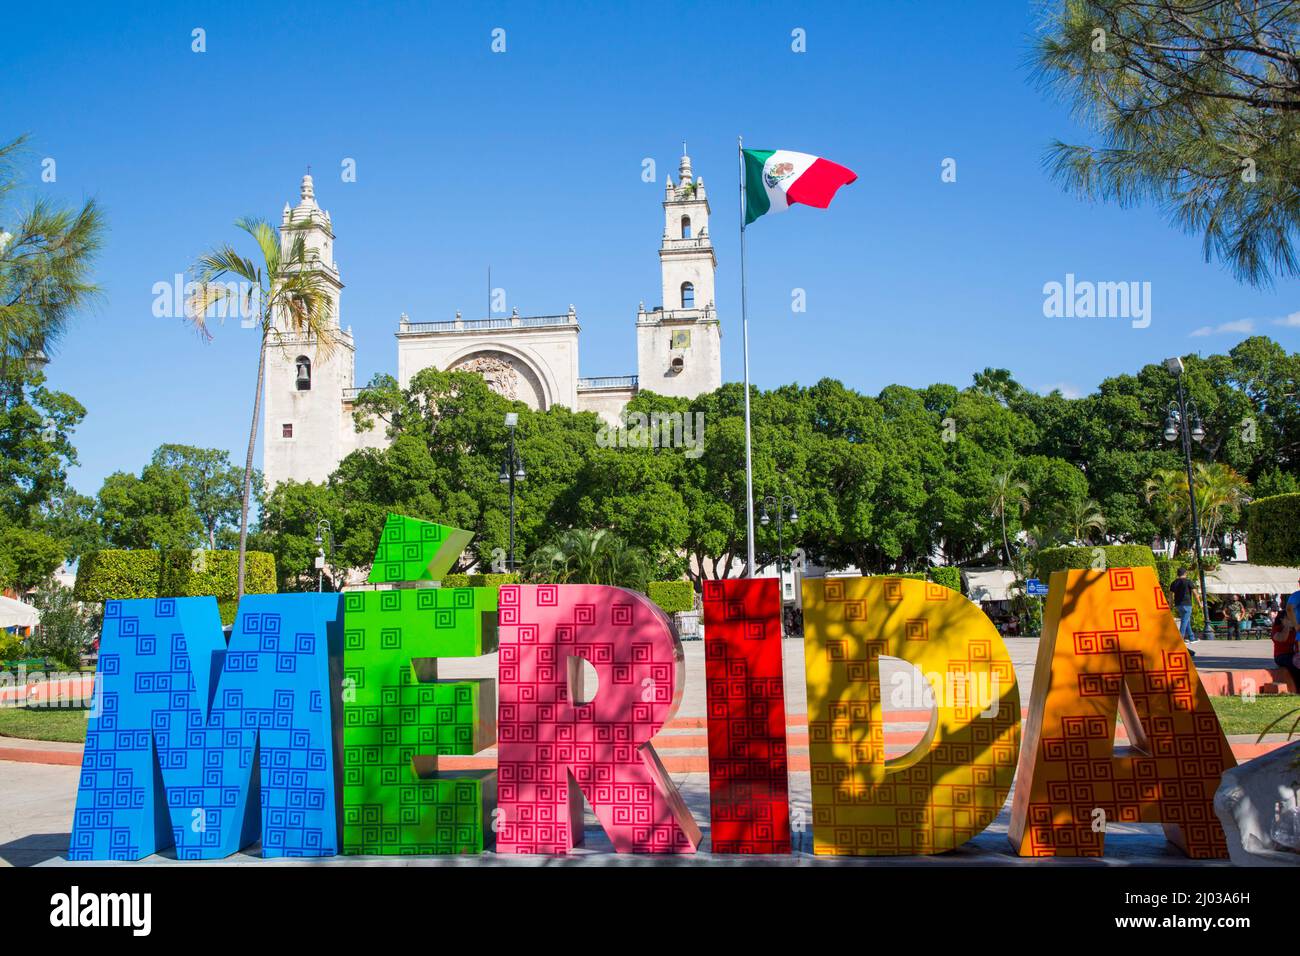 Merida-Schild, mexikanische Flagge, Plaza Grande, Kathedrale von IIdefonso im Hintergrund, Merida, Bundesstaat Yucatan, Mexiko, Nordamerika Stockfoto